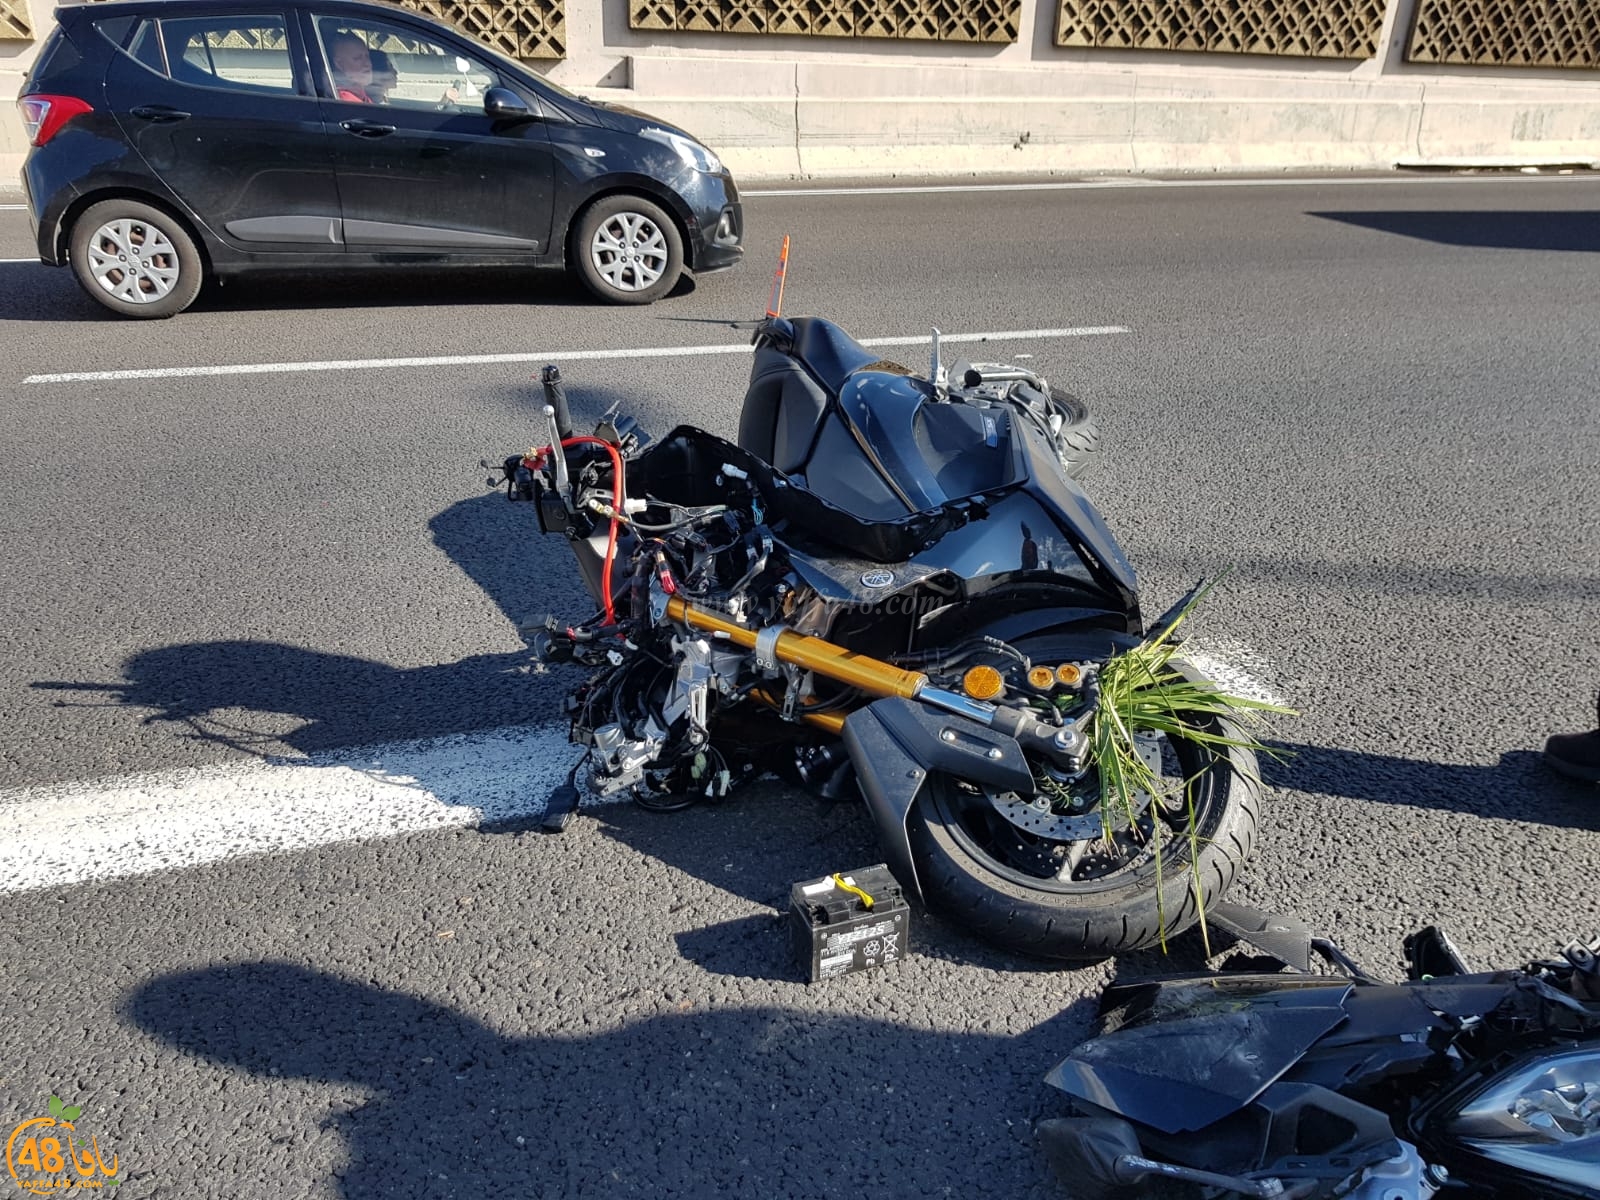   بالصور: إصابة متوسطة لراكب دراجة نارية بحادث طرق جنوب يافا